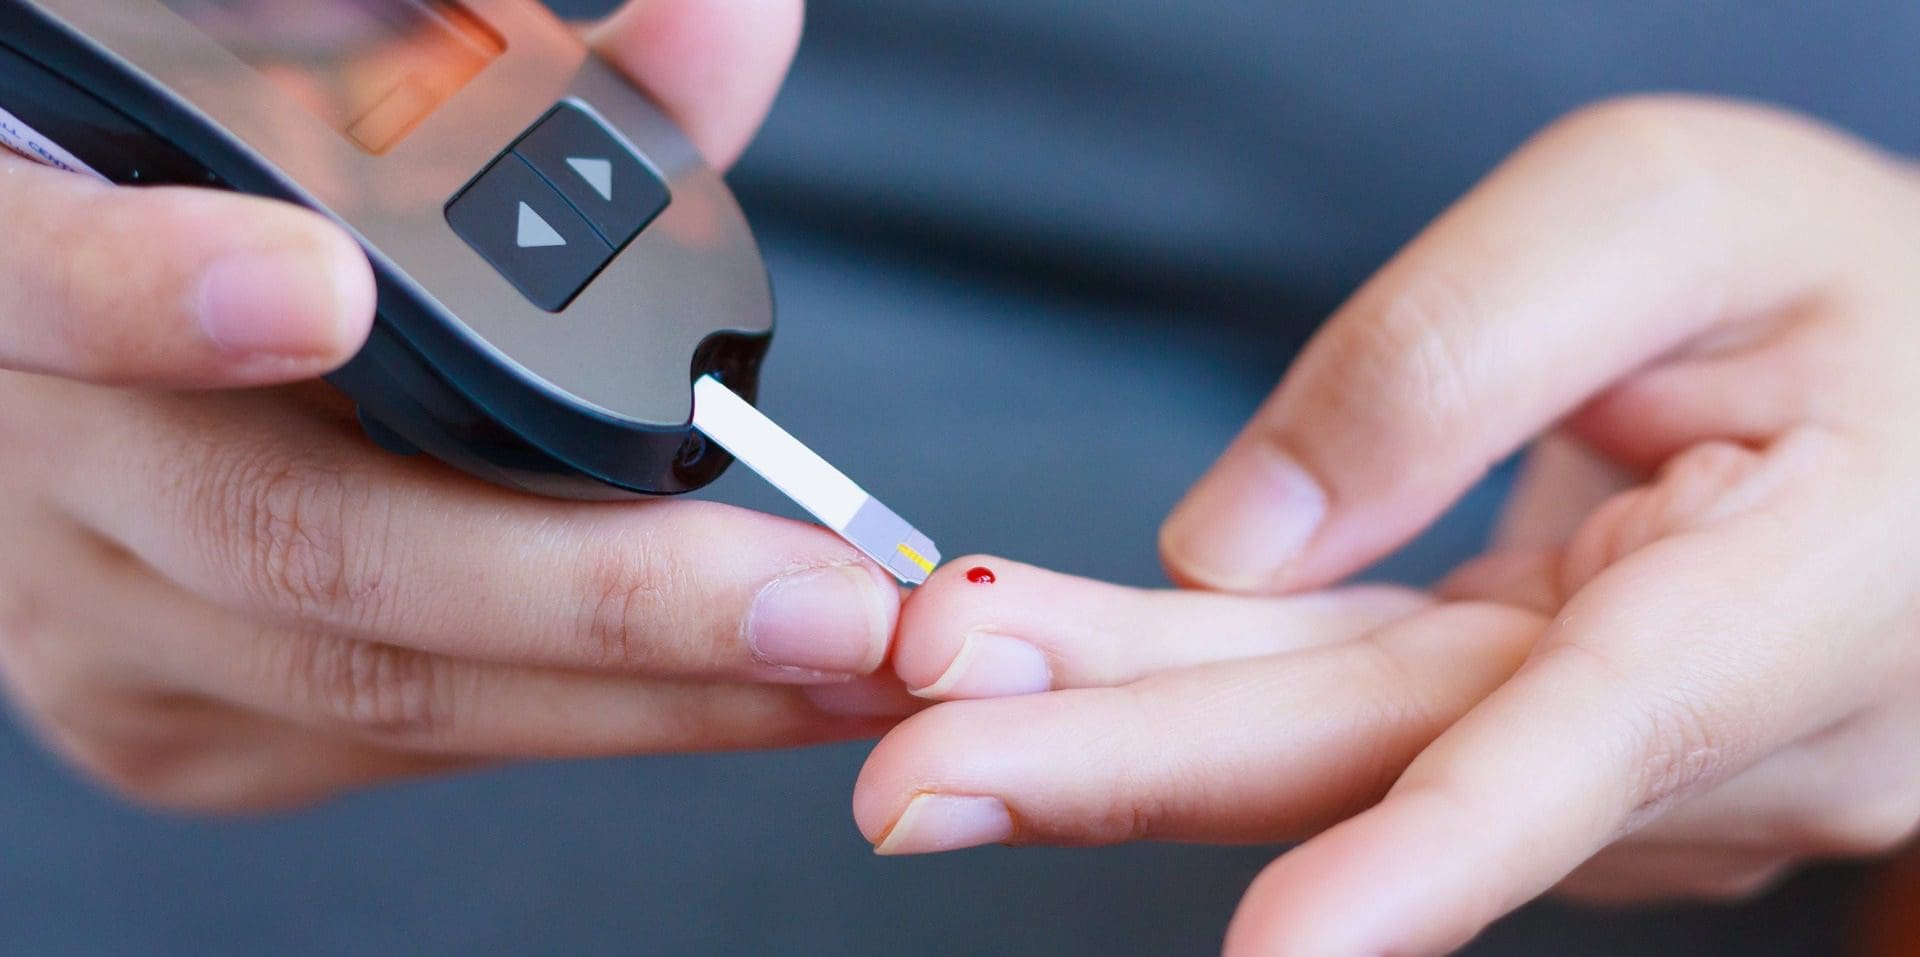 Investigadores querem ajudar a controlar diabetes tipo 2 através de aplicação móvel